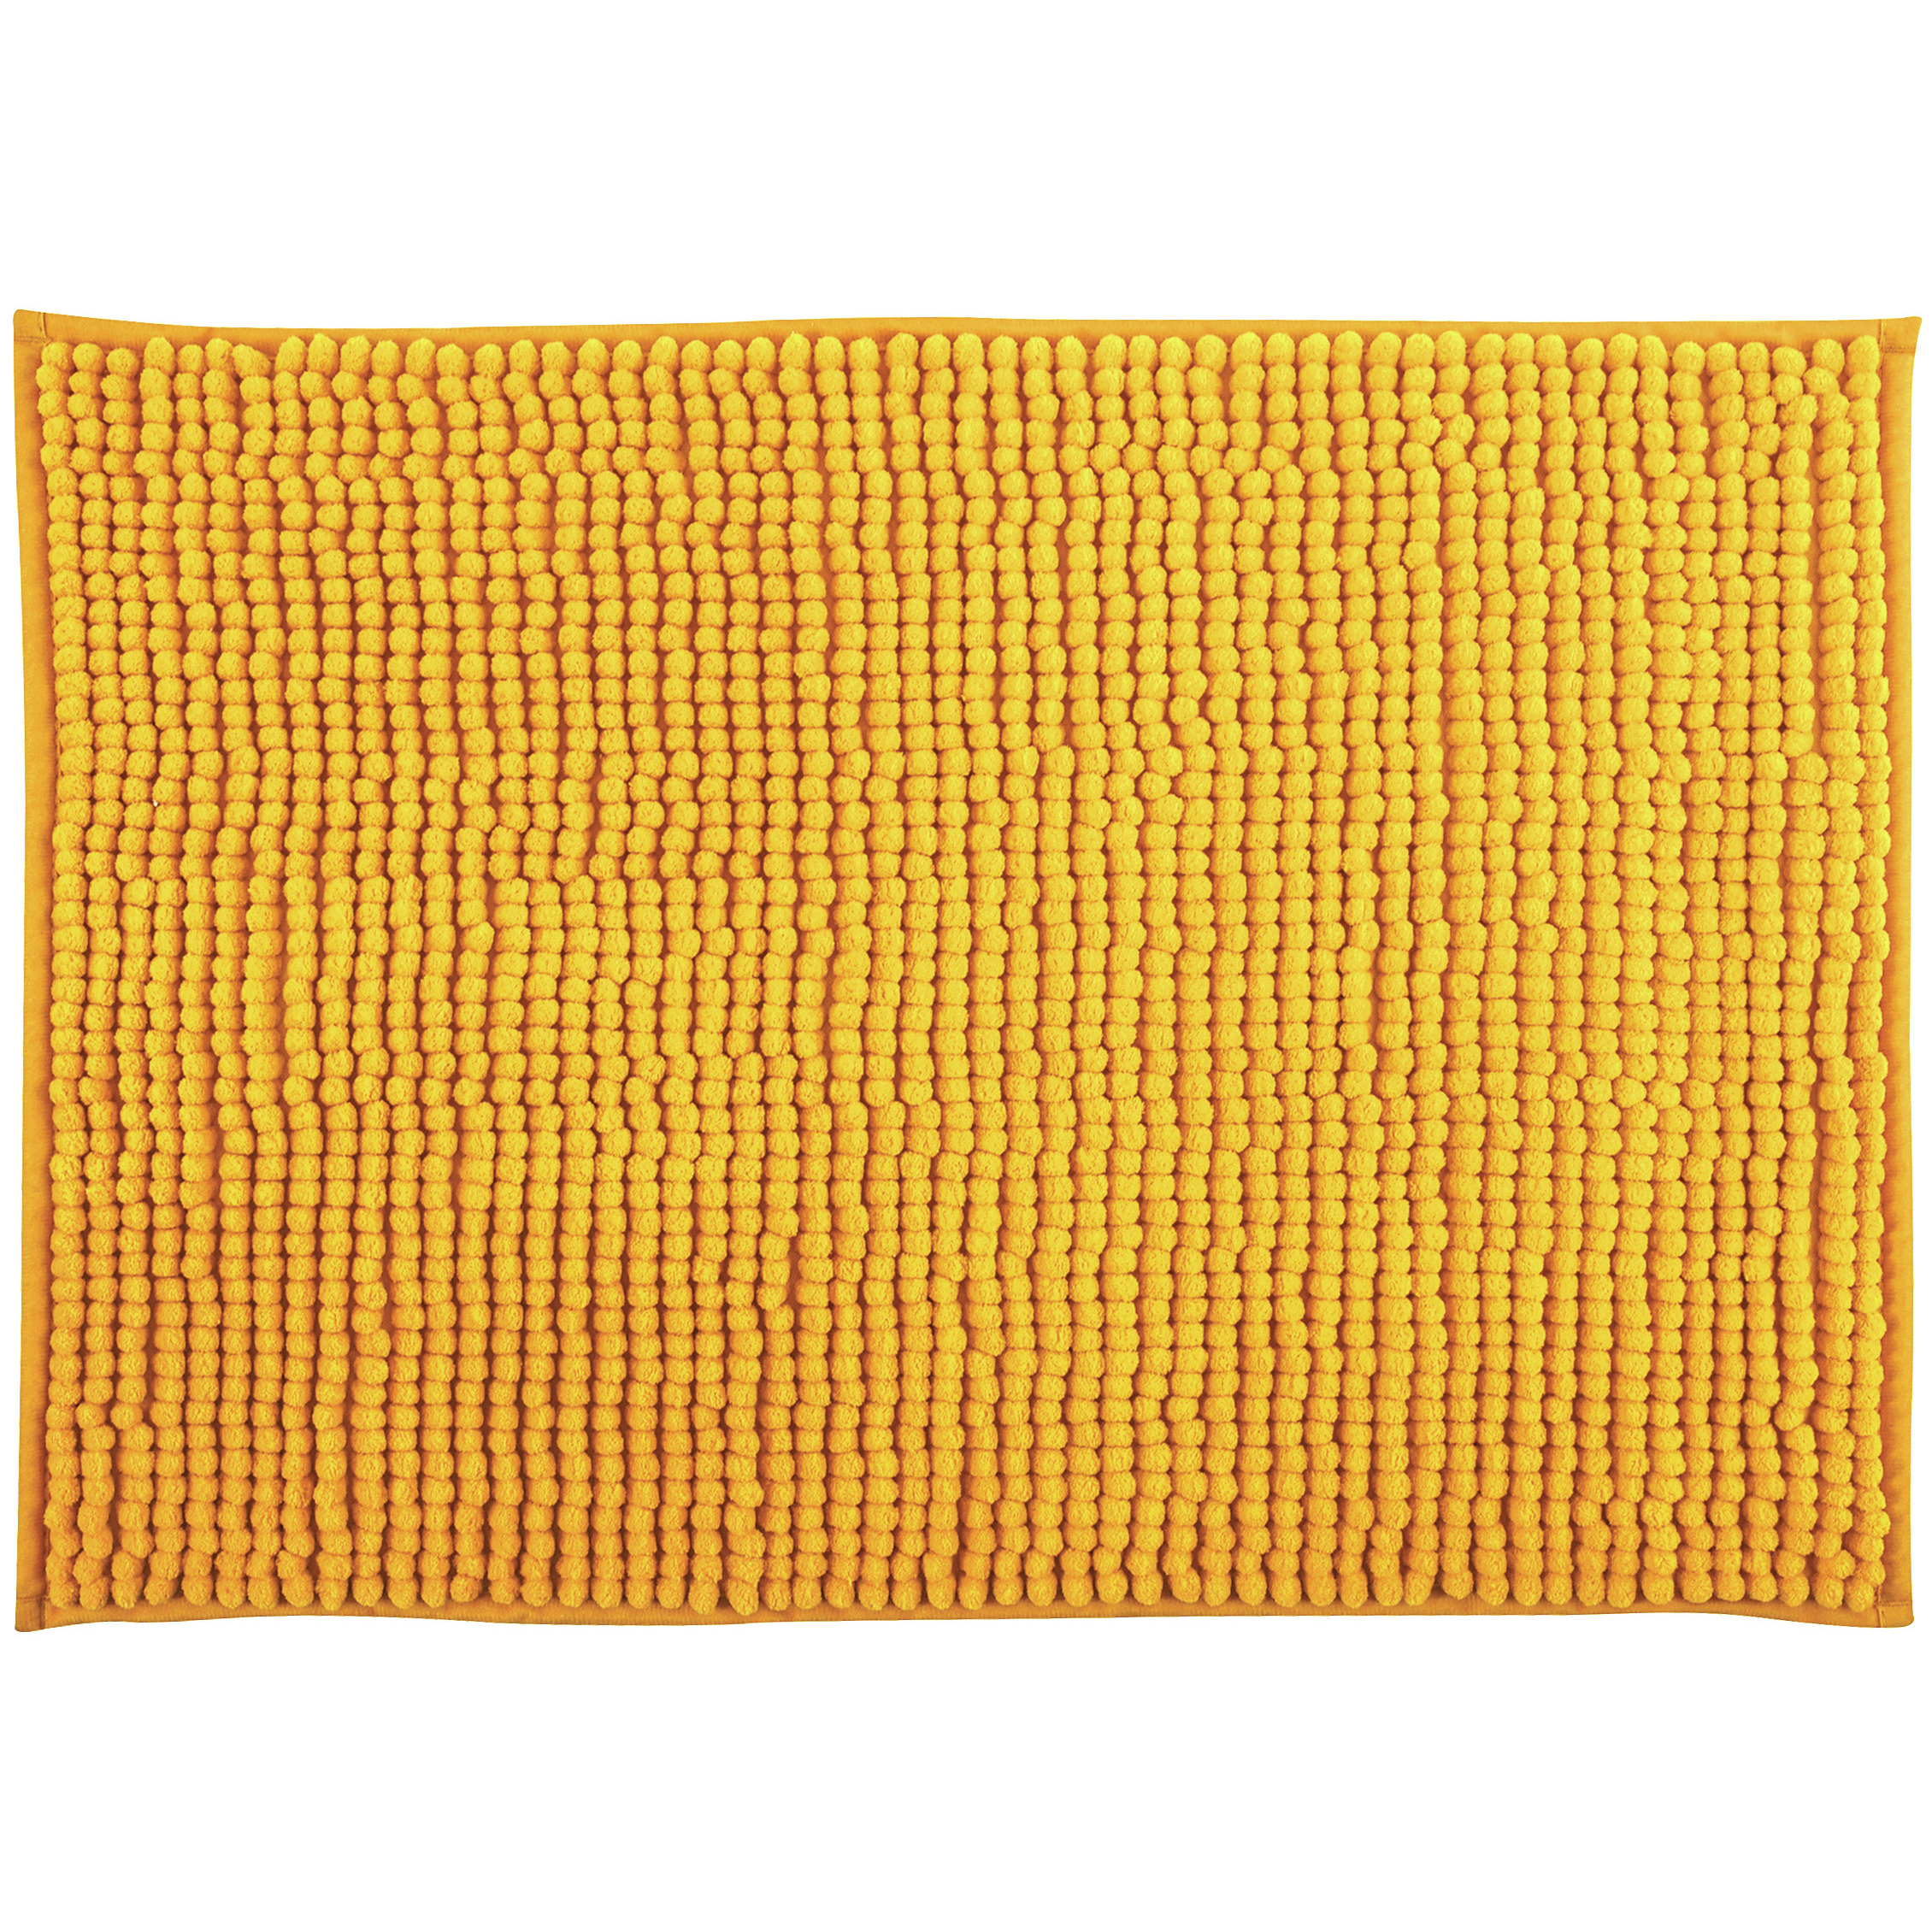 Badkamerkleedje-badmat tapijt kleedje voor op de vloer saffraan geel 60 x 90 cm